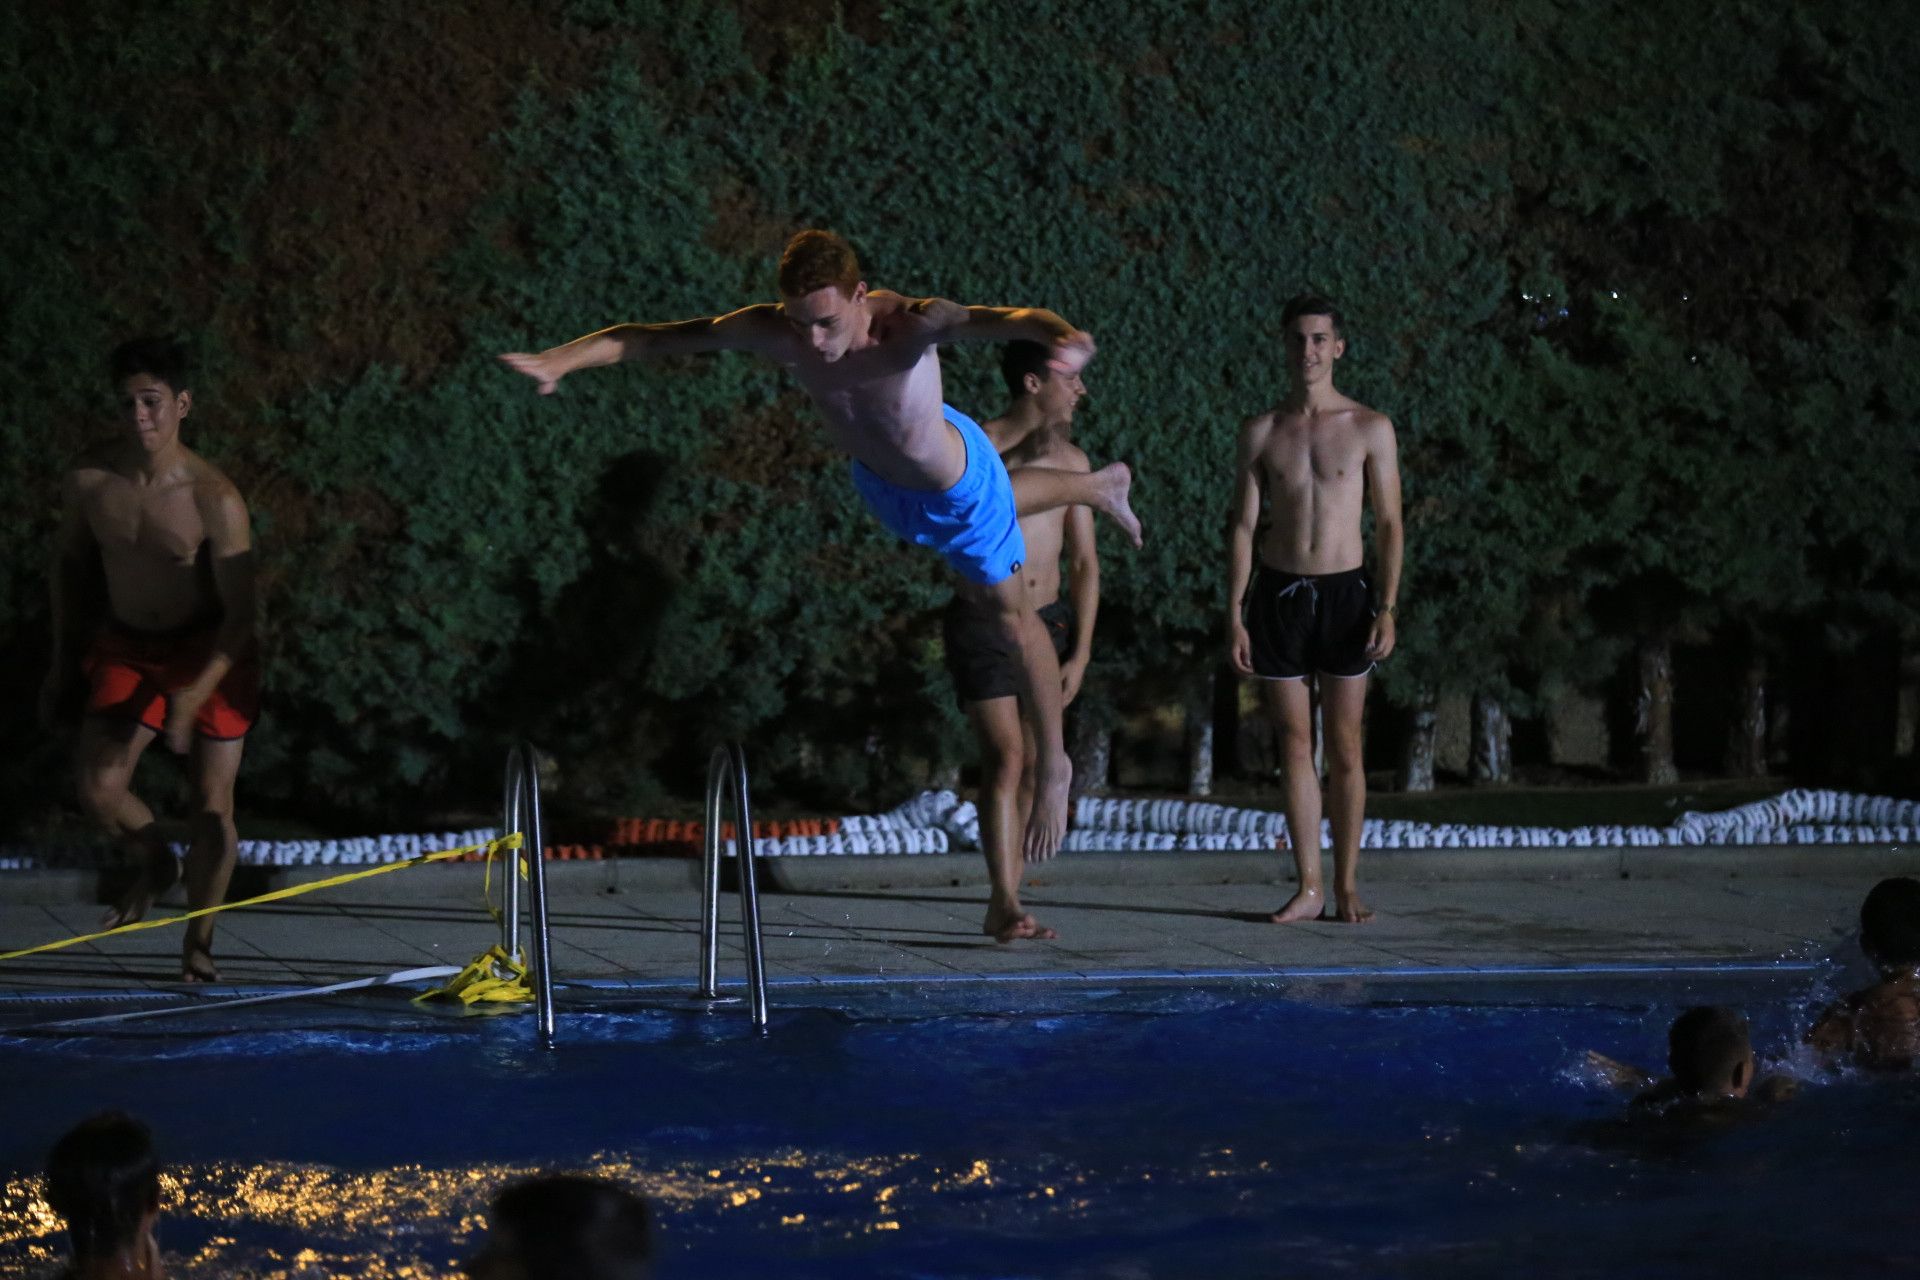  Baños nocturnos piscina Carbajosa (9) 